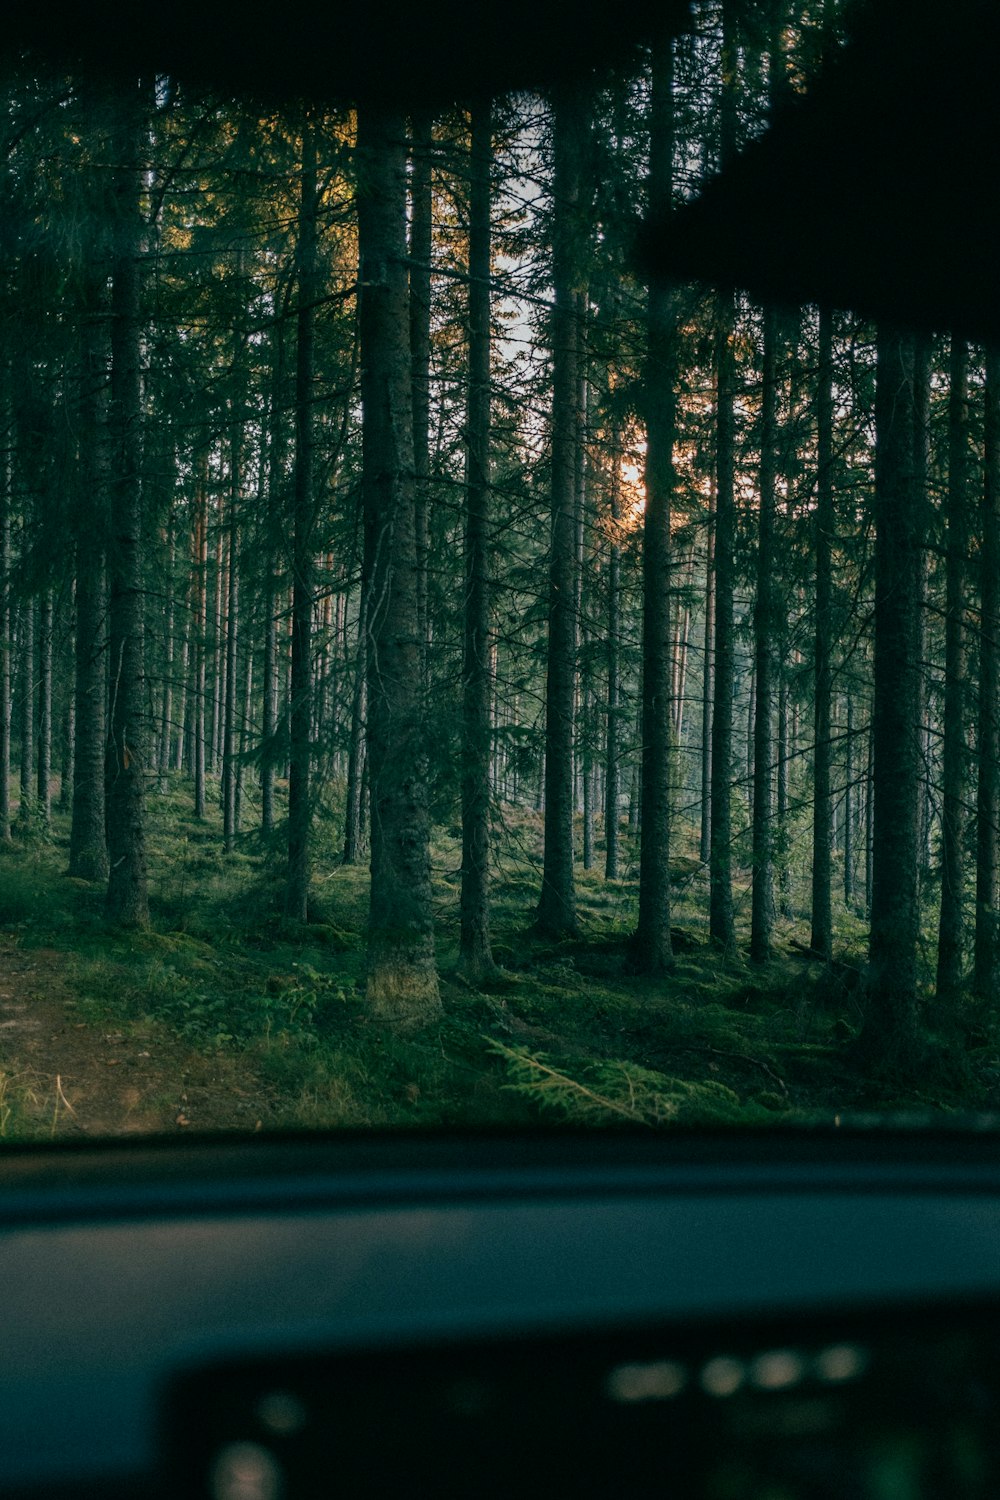 Un coche conduciendo a través de un bosque lleno de árboles altos